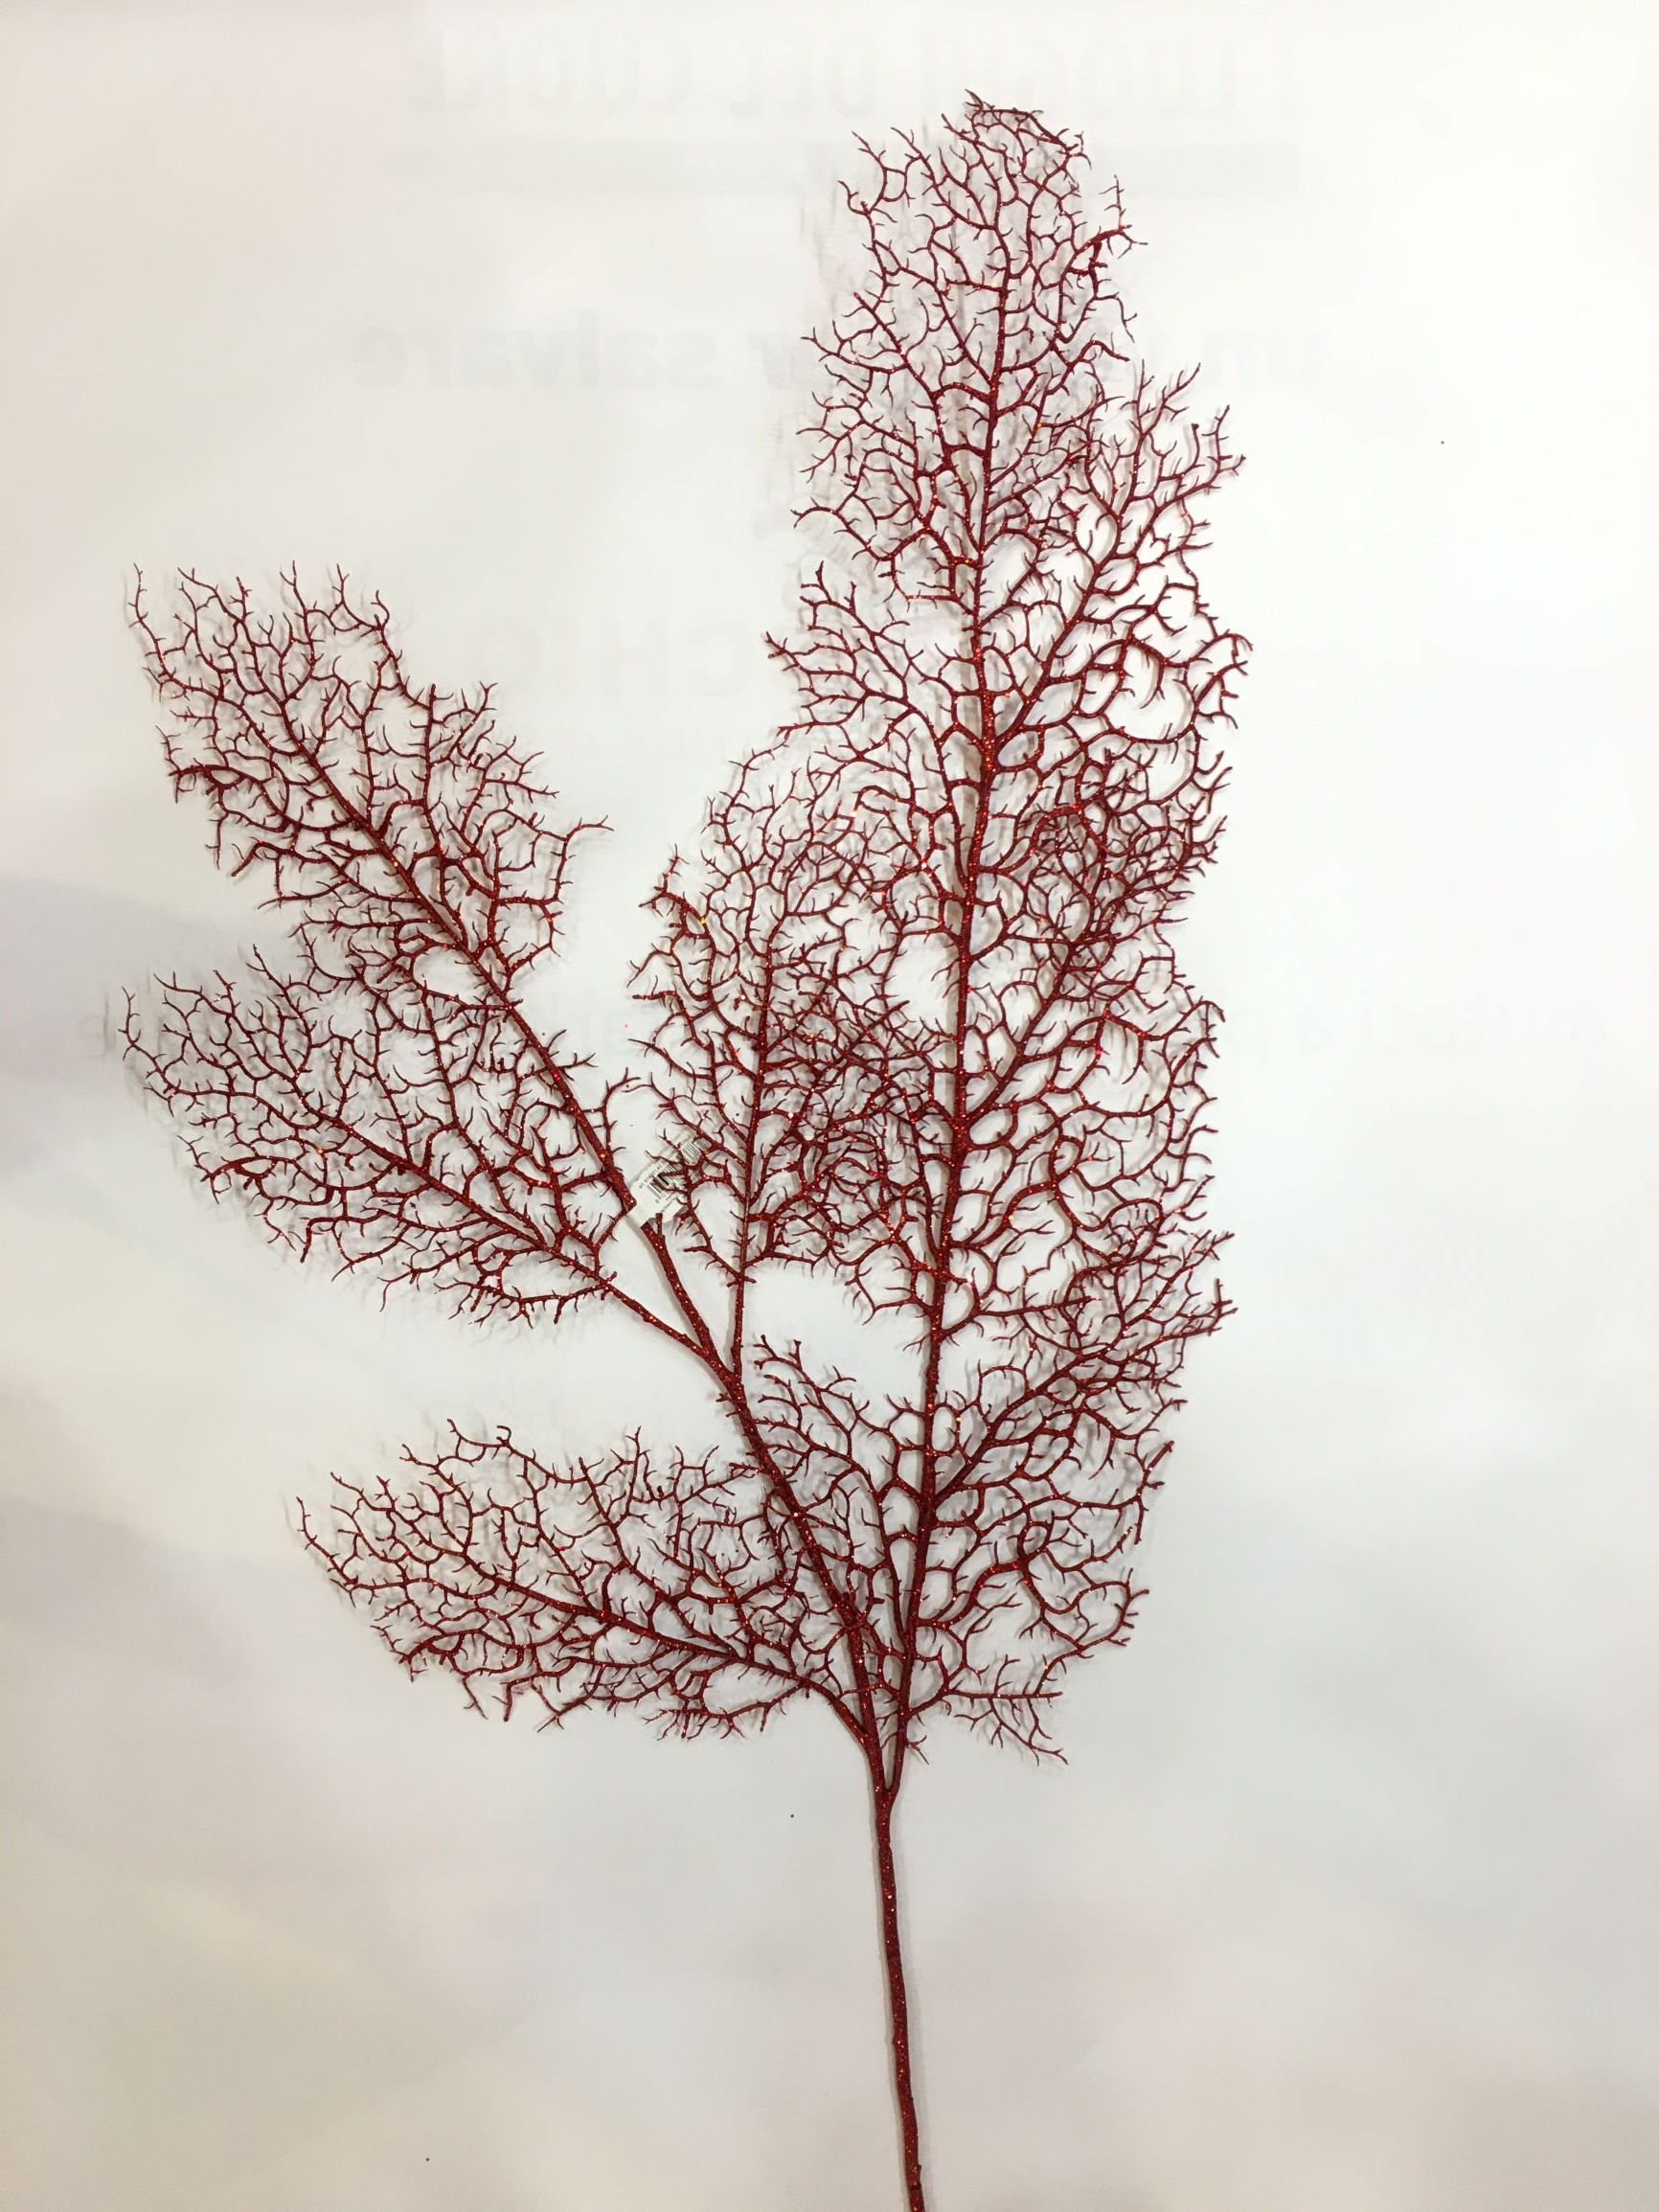 Ramo corallo di colorato con glitter rosso cm 122 h. Inserito in una composizione di fiori, nell'albero di Natale, il corallo dà volume e un aspetto più raffinato.